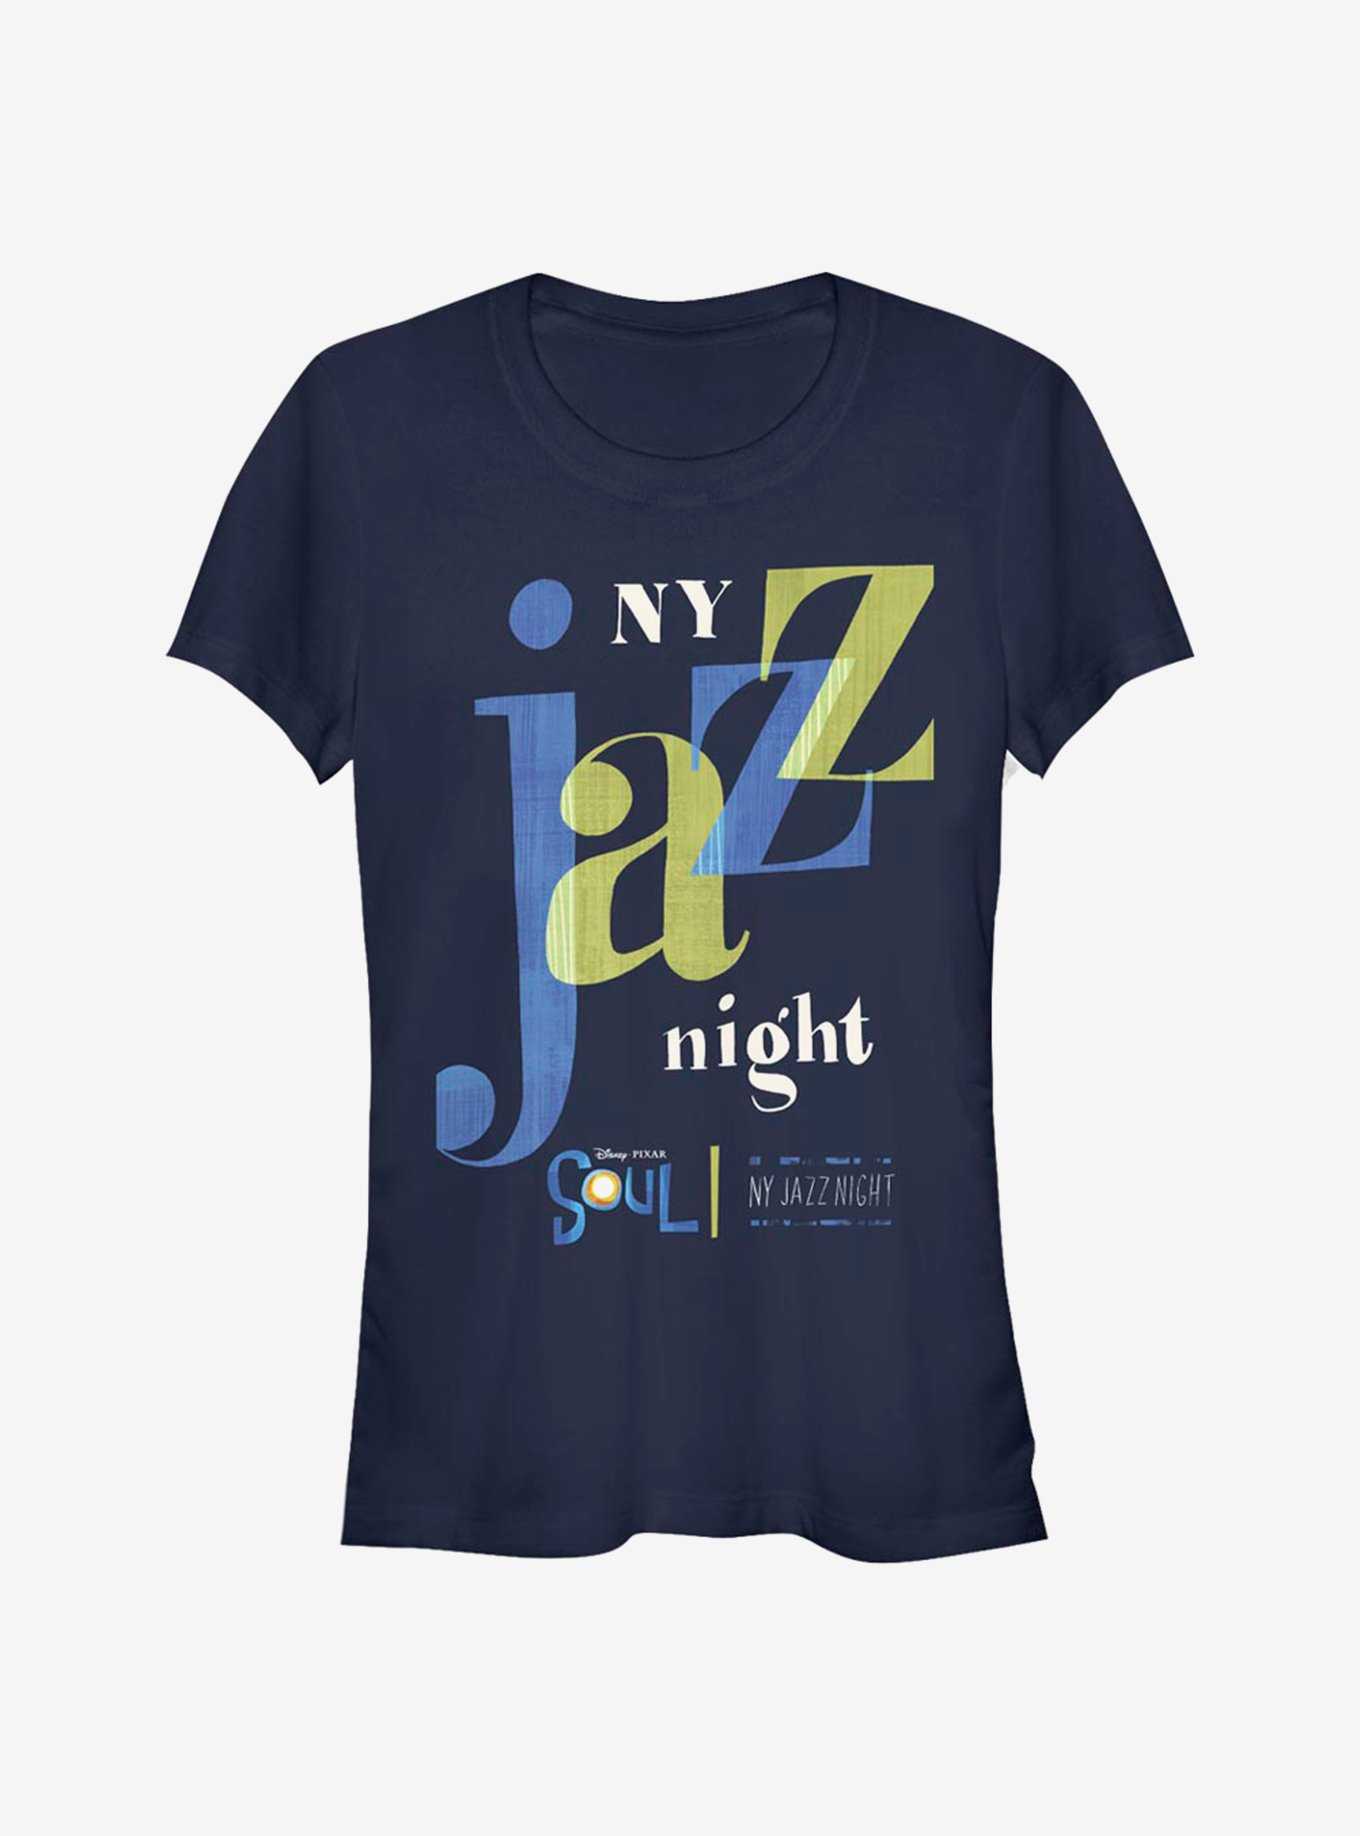 Disney Pixar Soul NY Jazz Night Girls T-Shirt, , hi-res